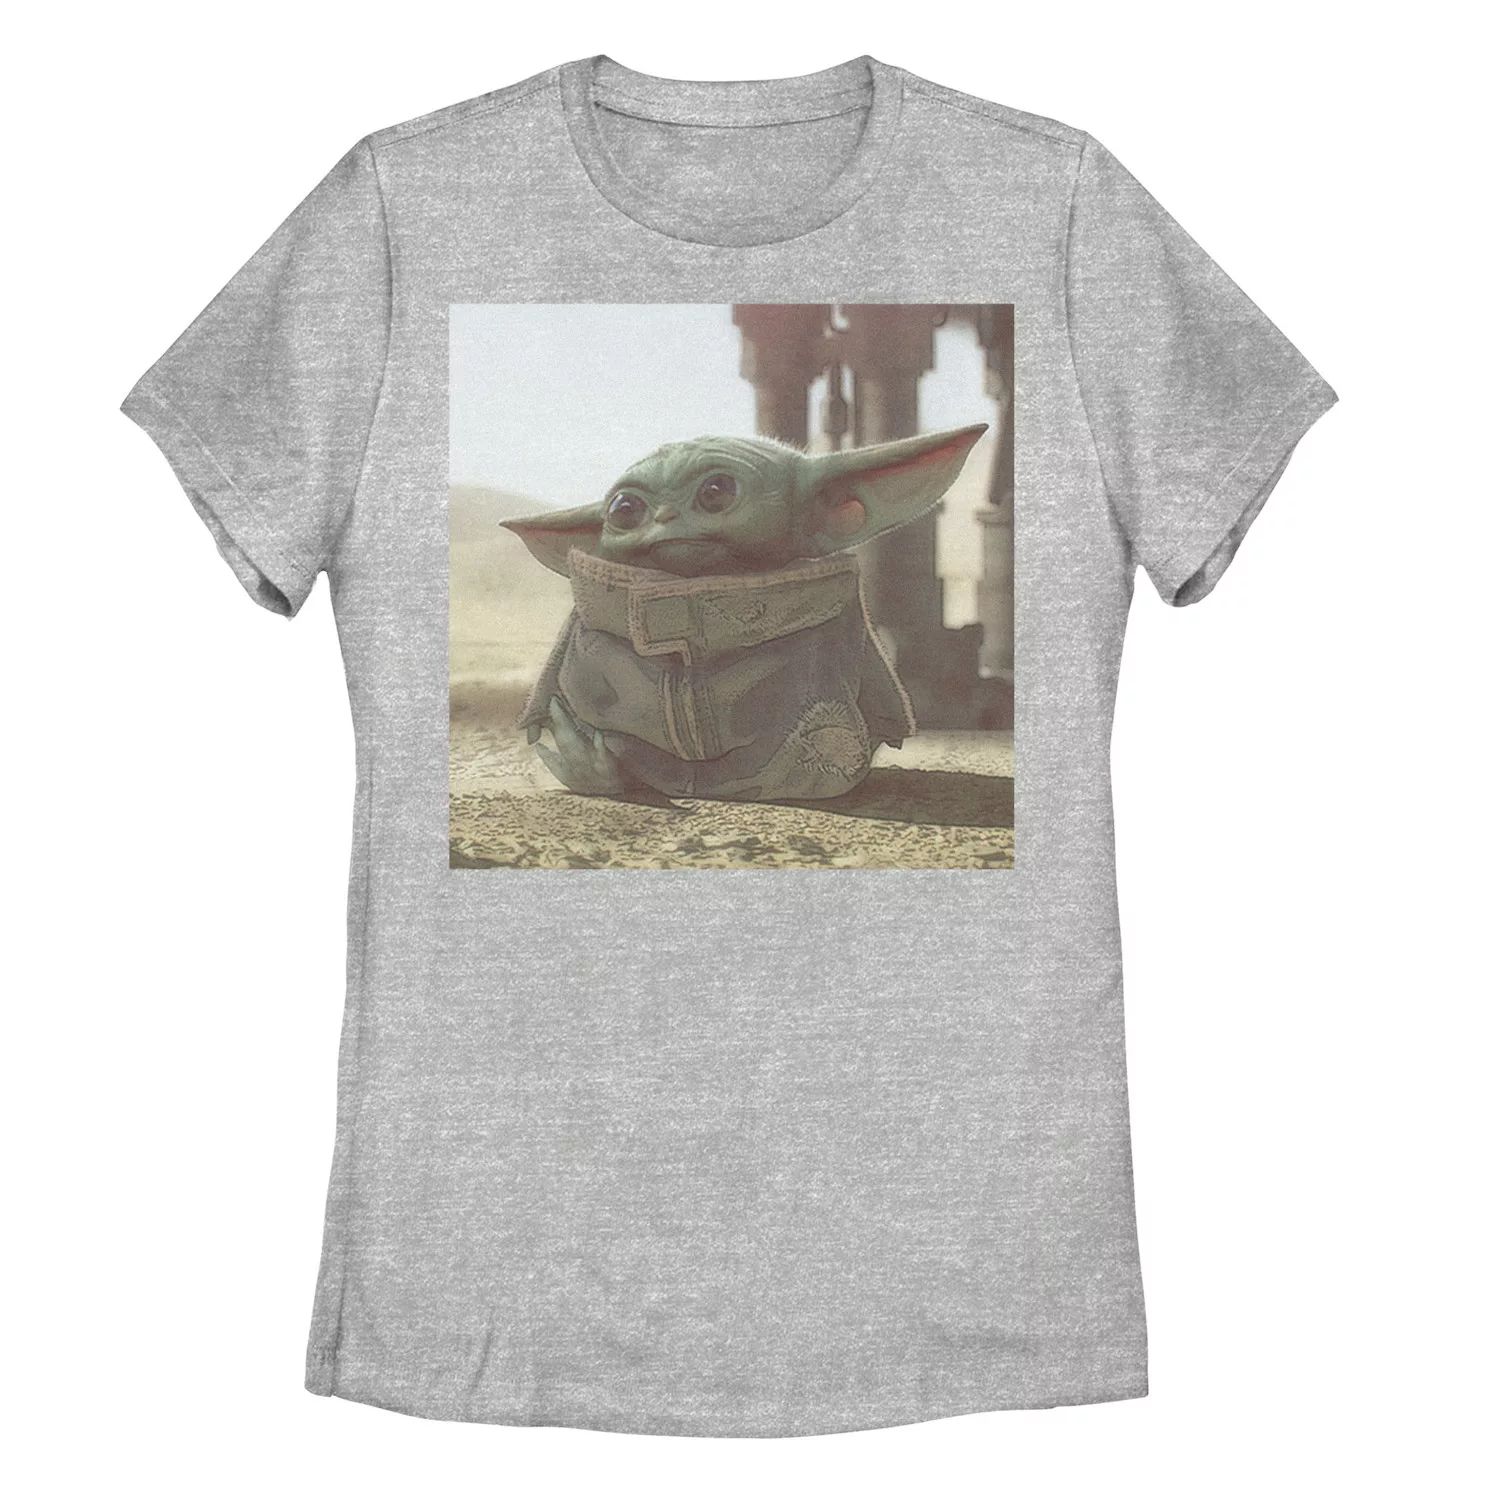 Детская футболка с рисунком «Звездные войны, мандалорец, ребенок, известный как Малыш Йода» Star Wars детская футболка с рисунком звездные войны мандалорец ребенок известный как малыш йода star wars